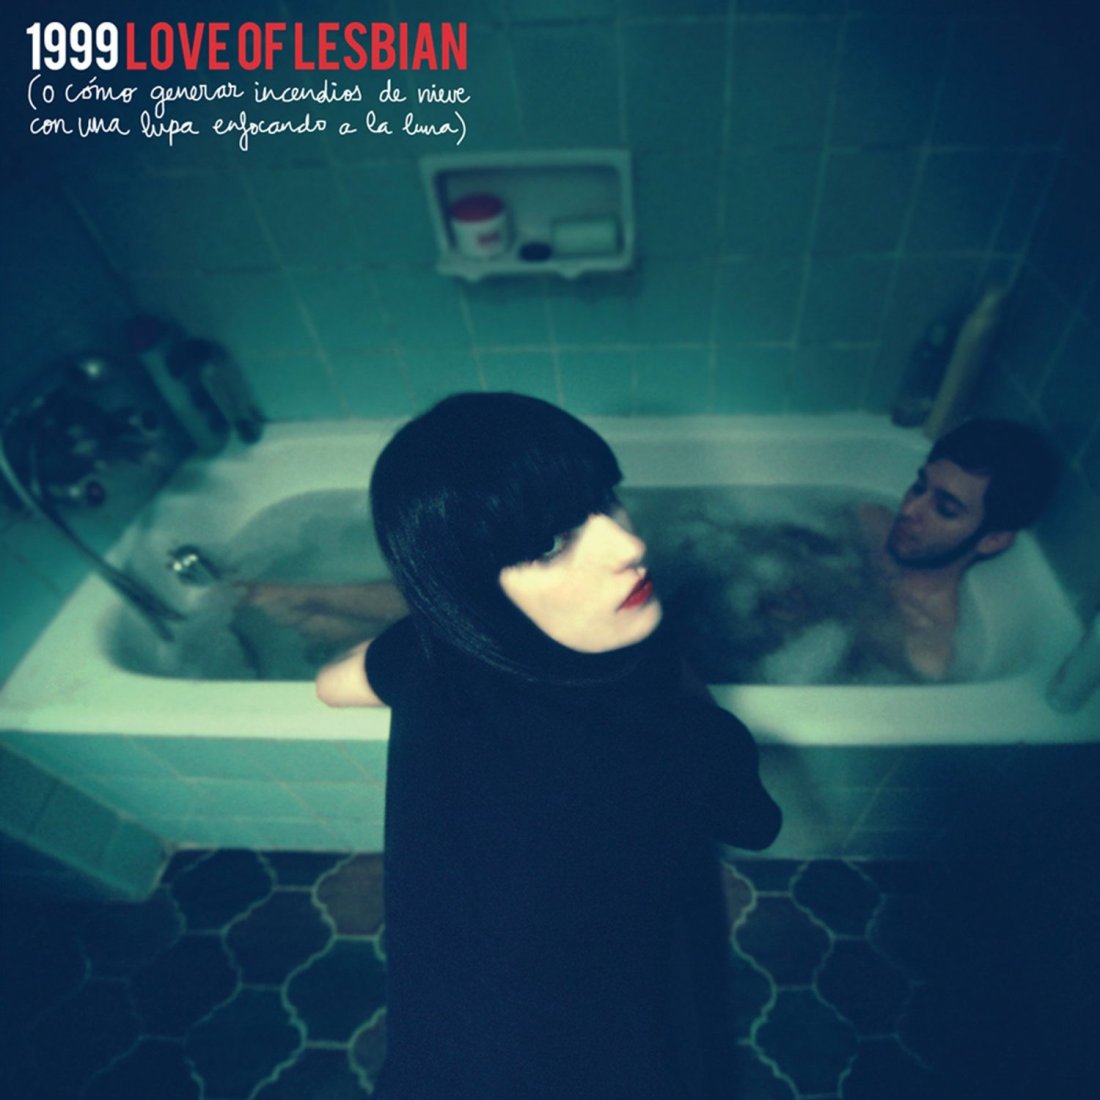 love-of-lesbian-1999-o-como-generar-incendios-de-nieve-con-una-lupa-enfocada-a-la-luna-1